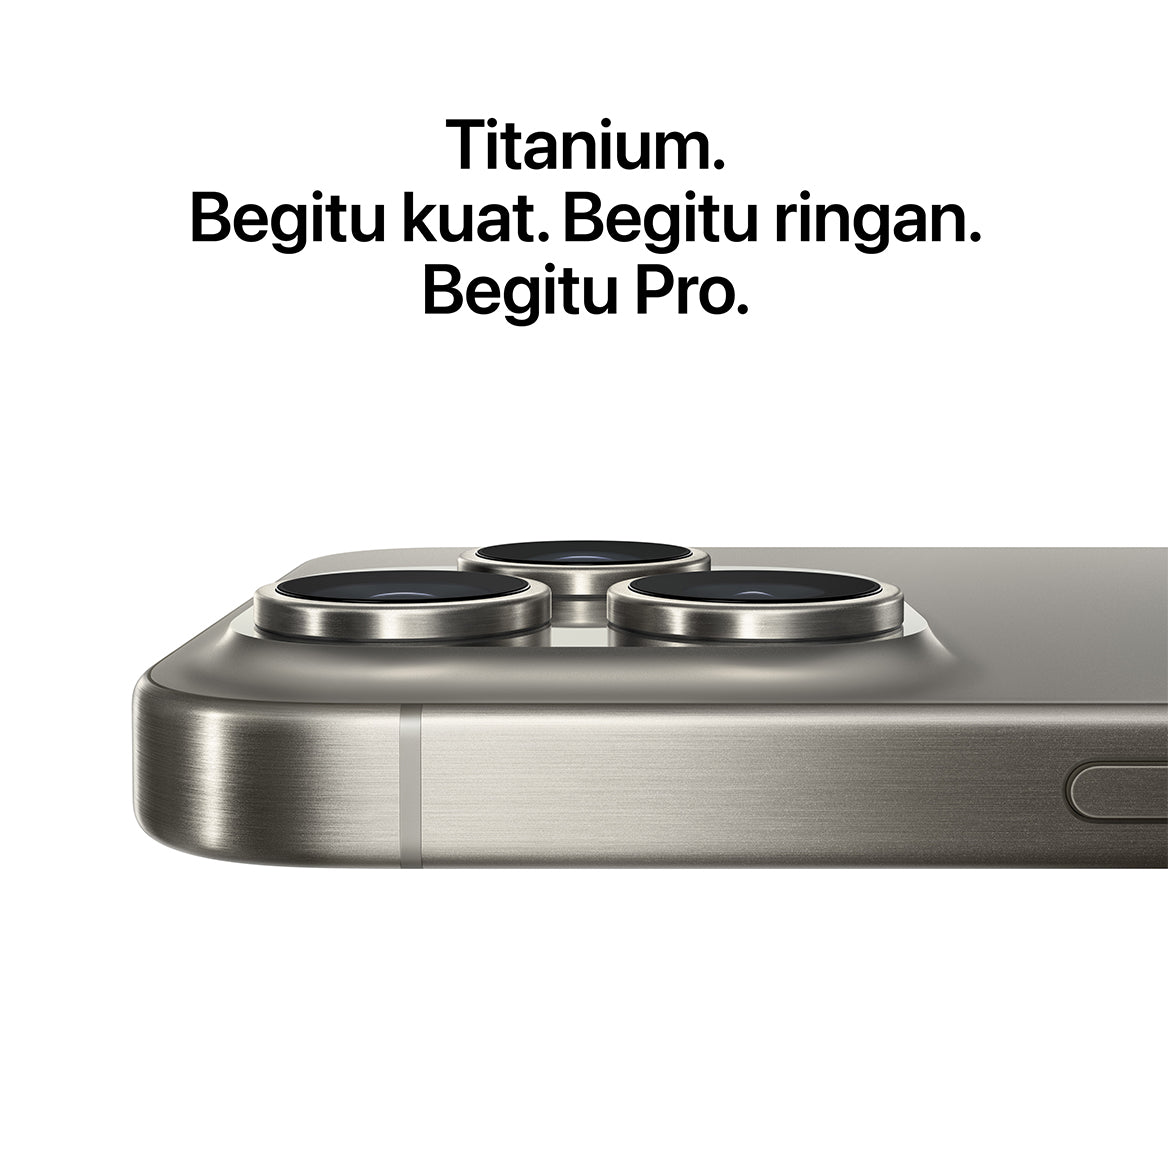 iPhone 15 Pro Blue Titanium